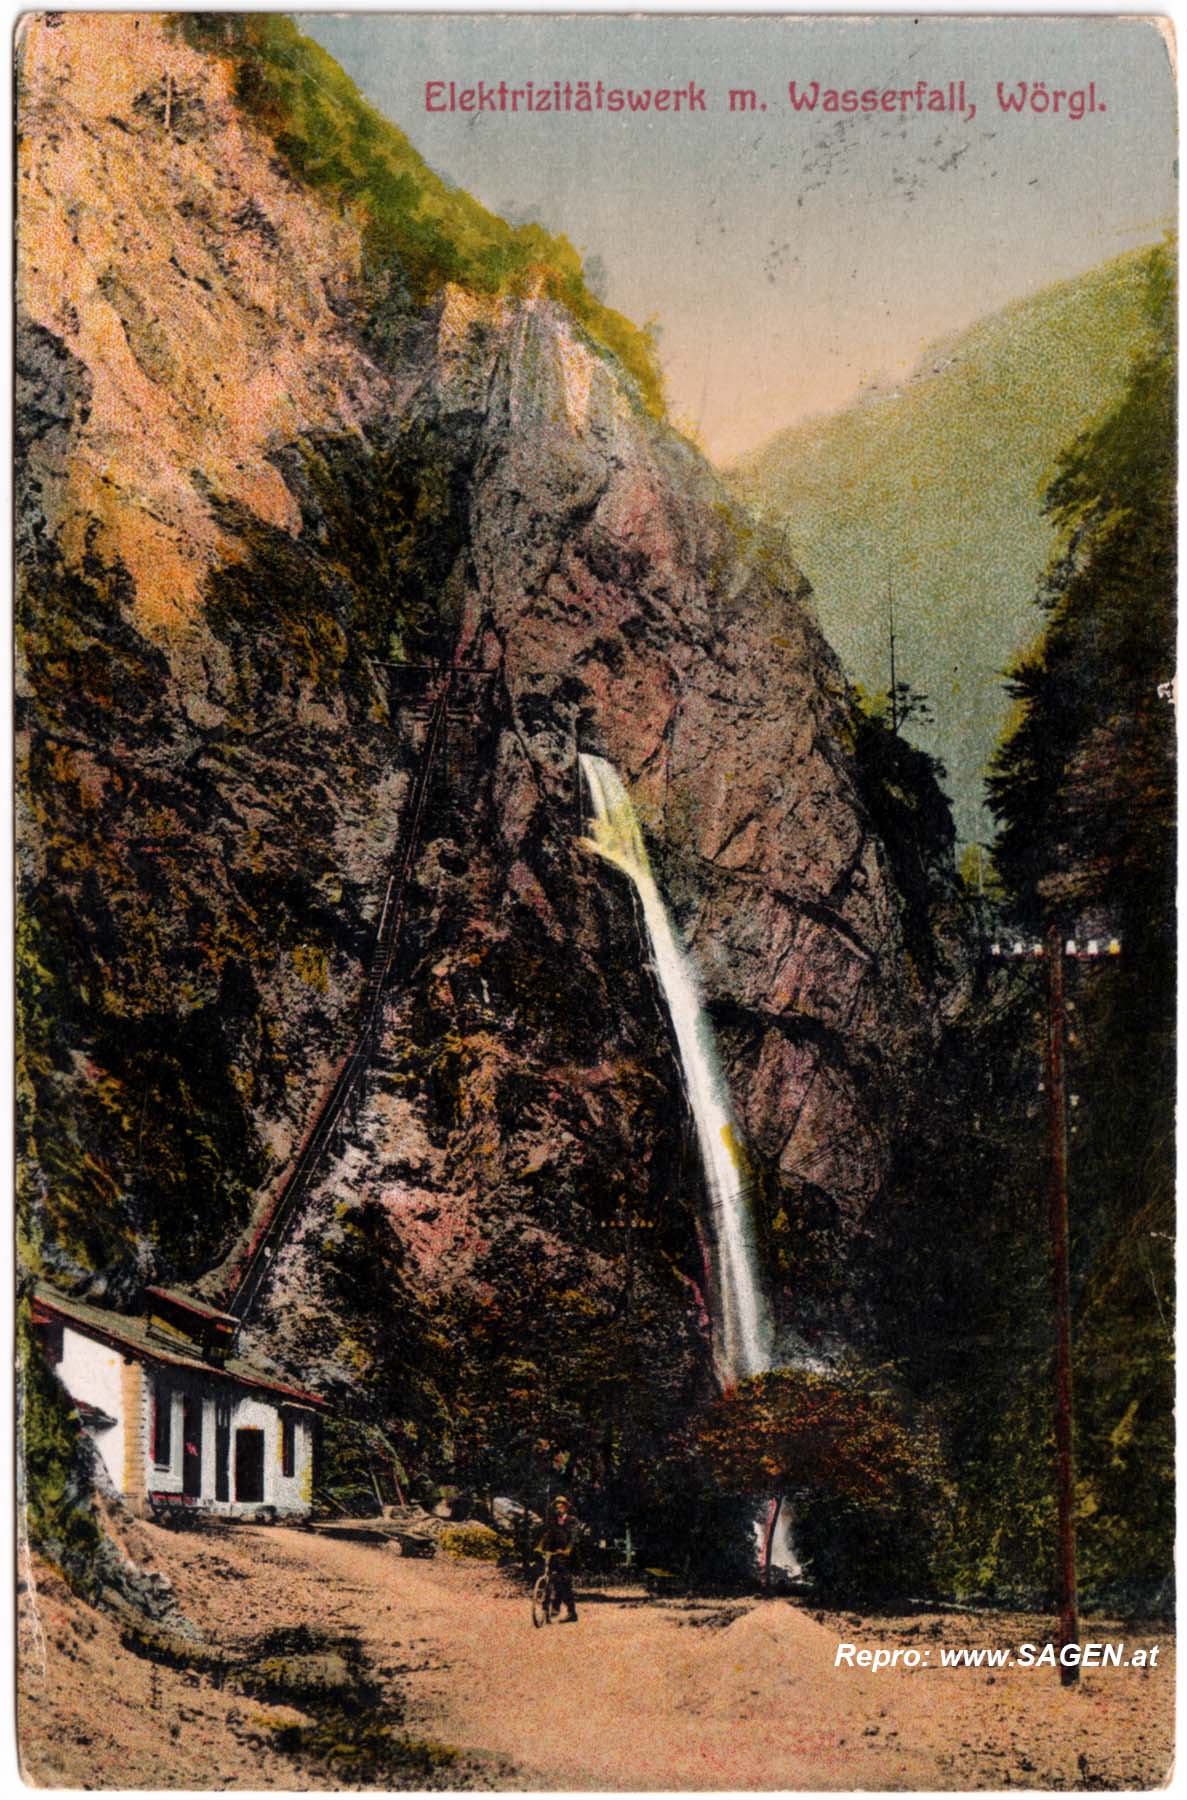 Elektrizitätswerk mit Wasserfall, Wörgl im Jahr 1916